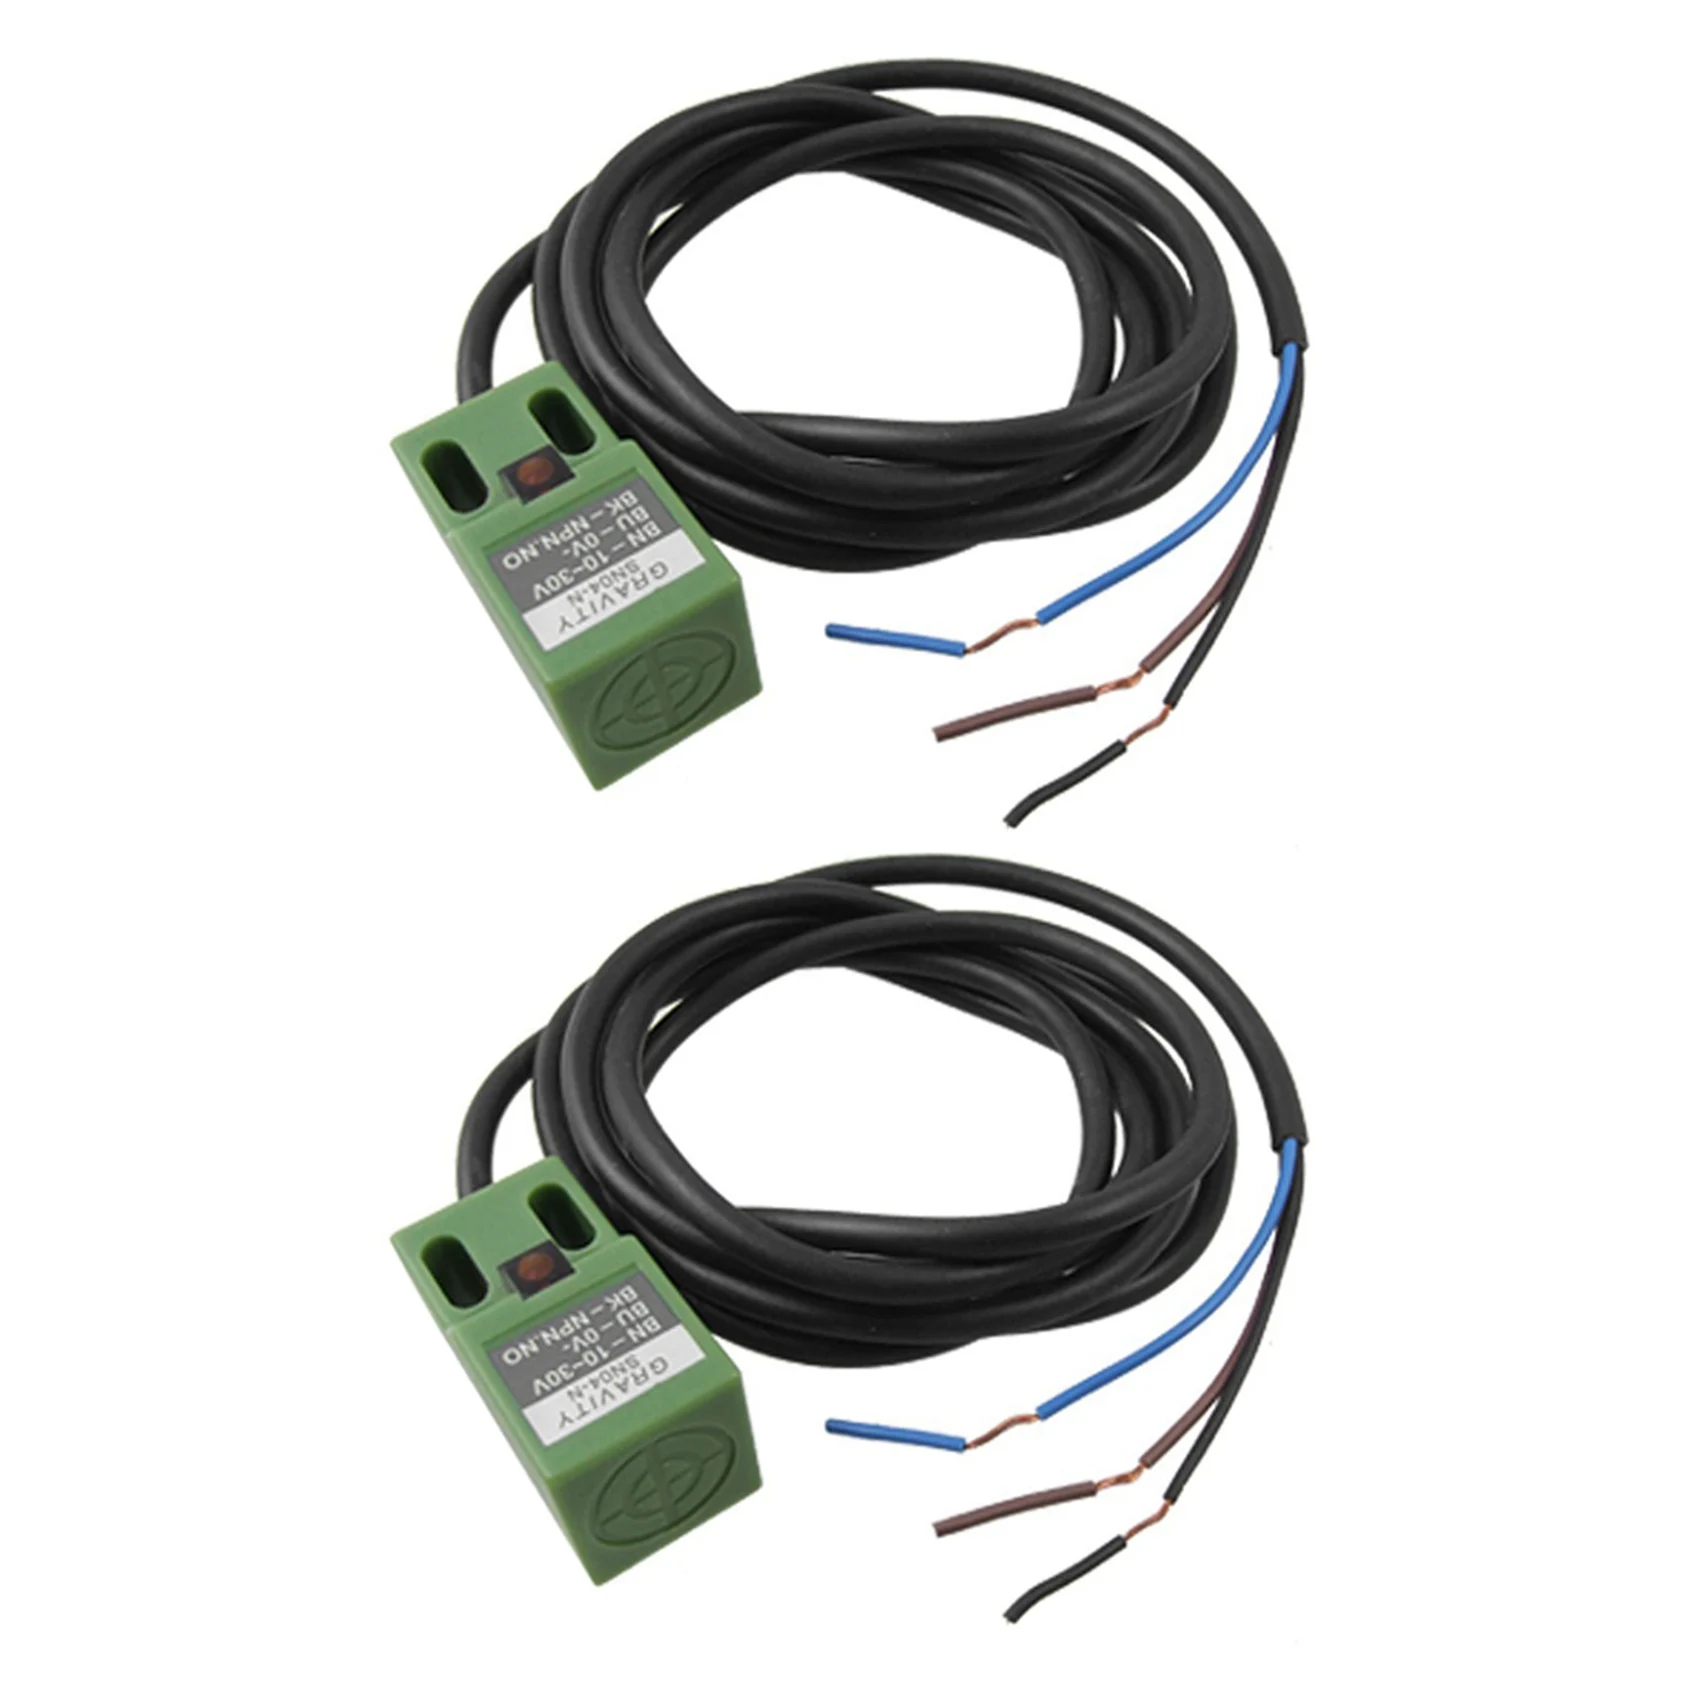 

2X SN04-N DC 10-30V NPN 3-Wire 4mm датчик приближения Индуктивный бесконтактный переключатель